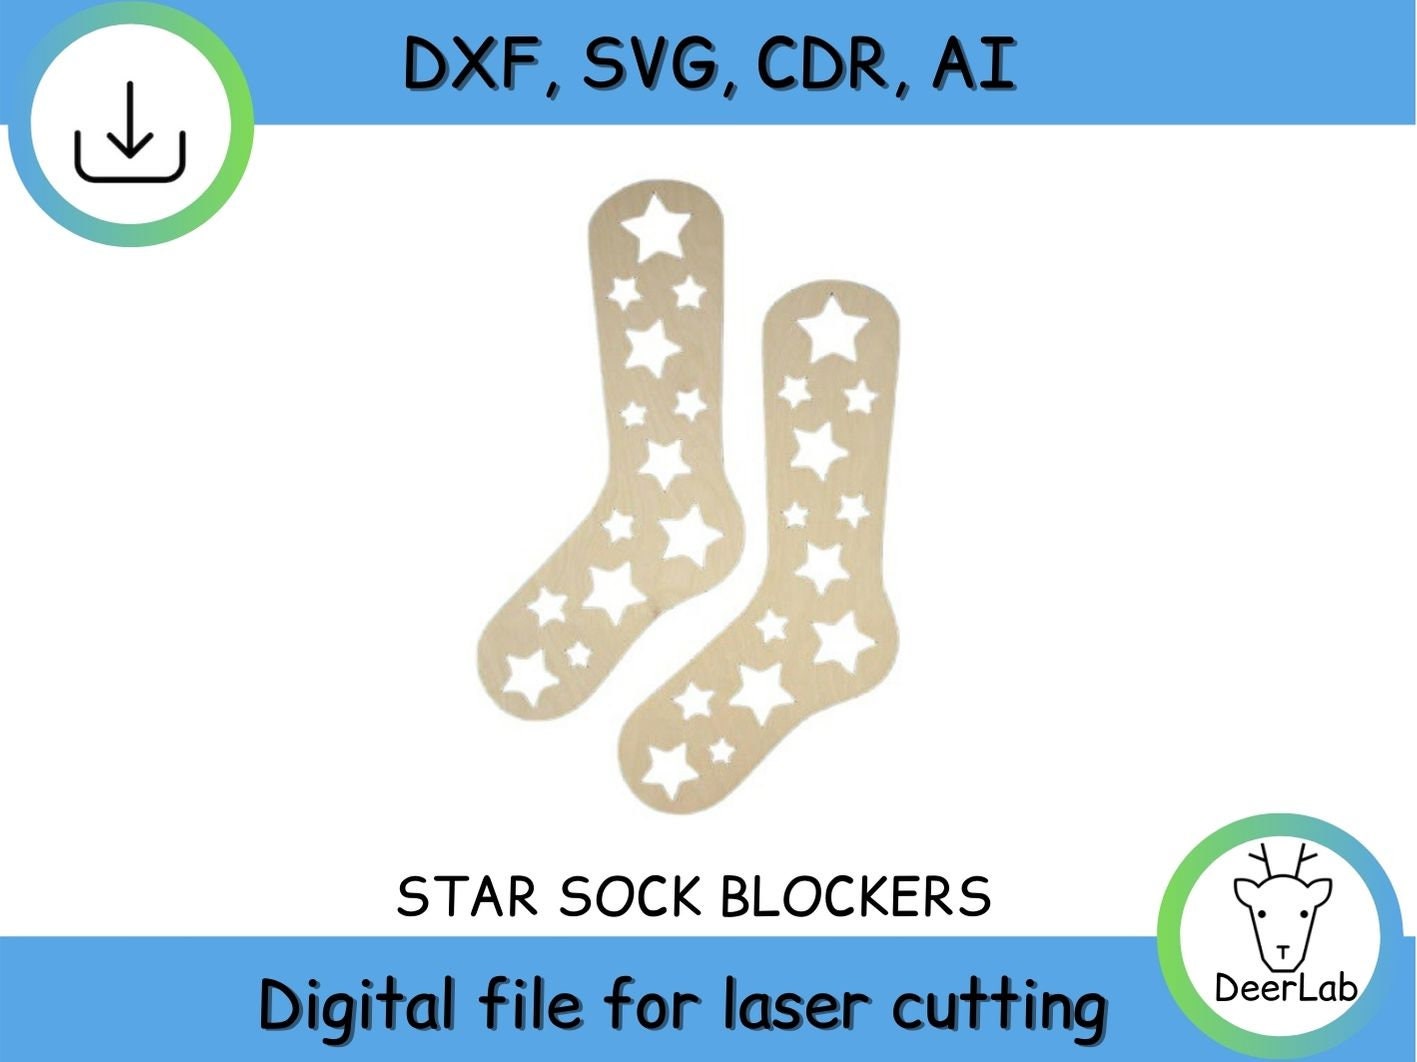 Adjustable Sock Blockers or Knee Sock Extenders - Pair (Baby, Kid, Adult Sizes Available) Adjustable Sock Blocker - Baby Size - Pair -$24